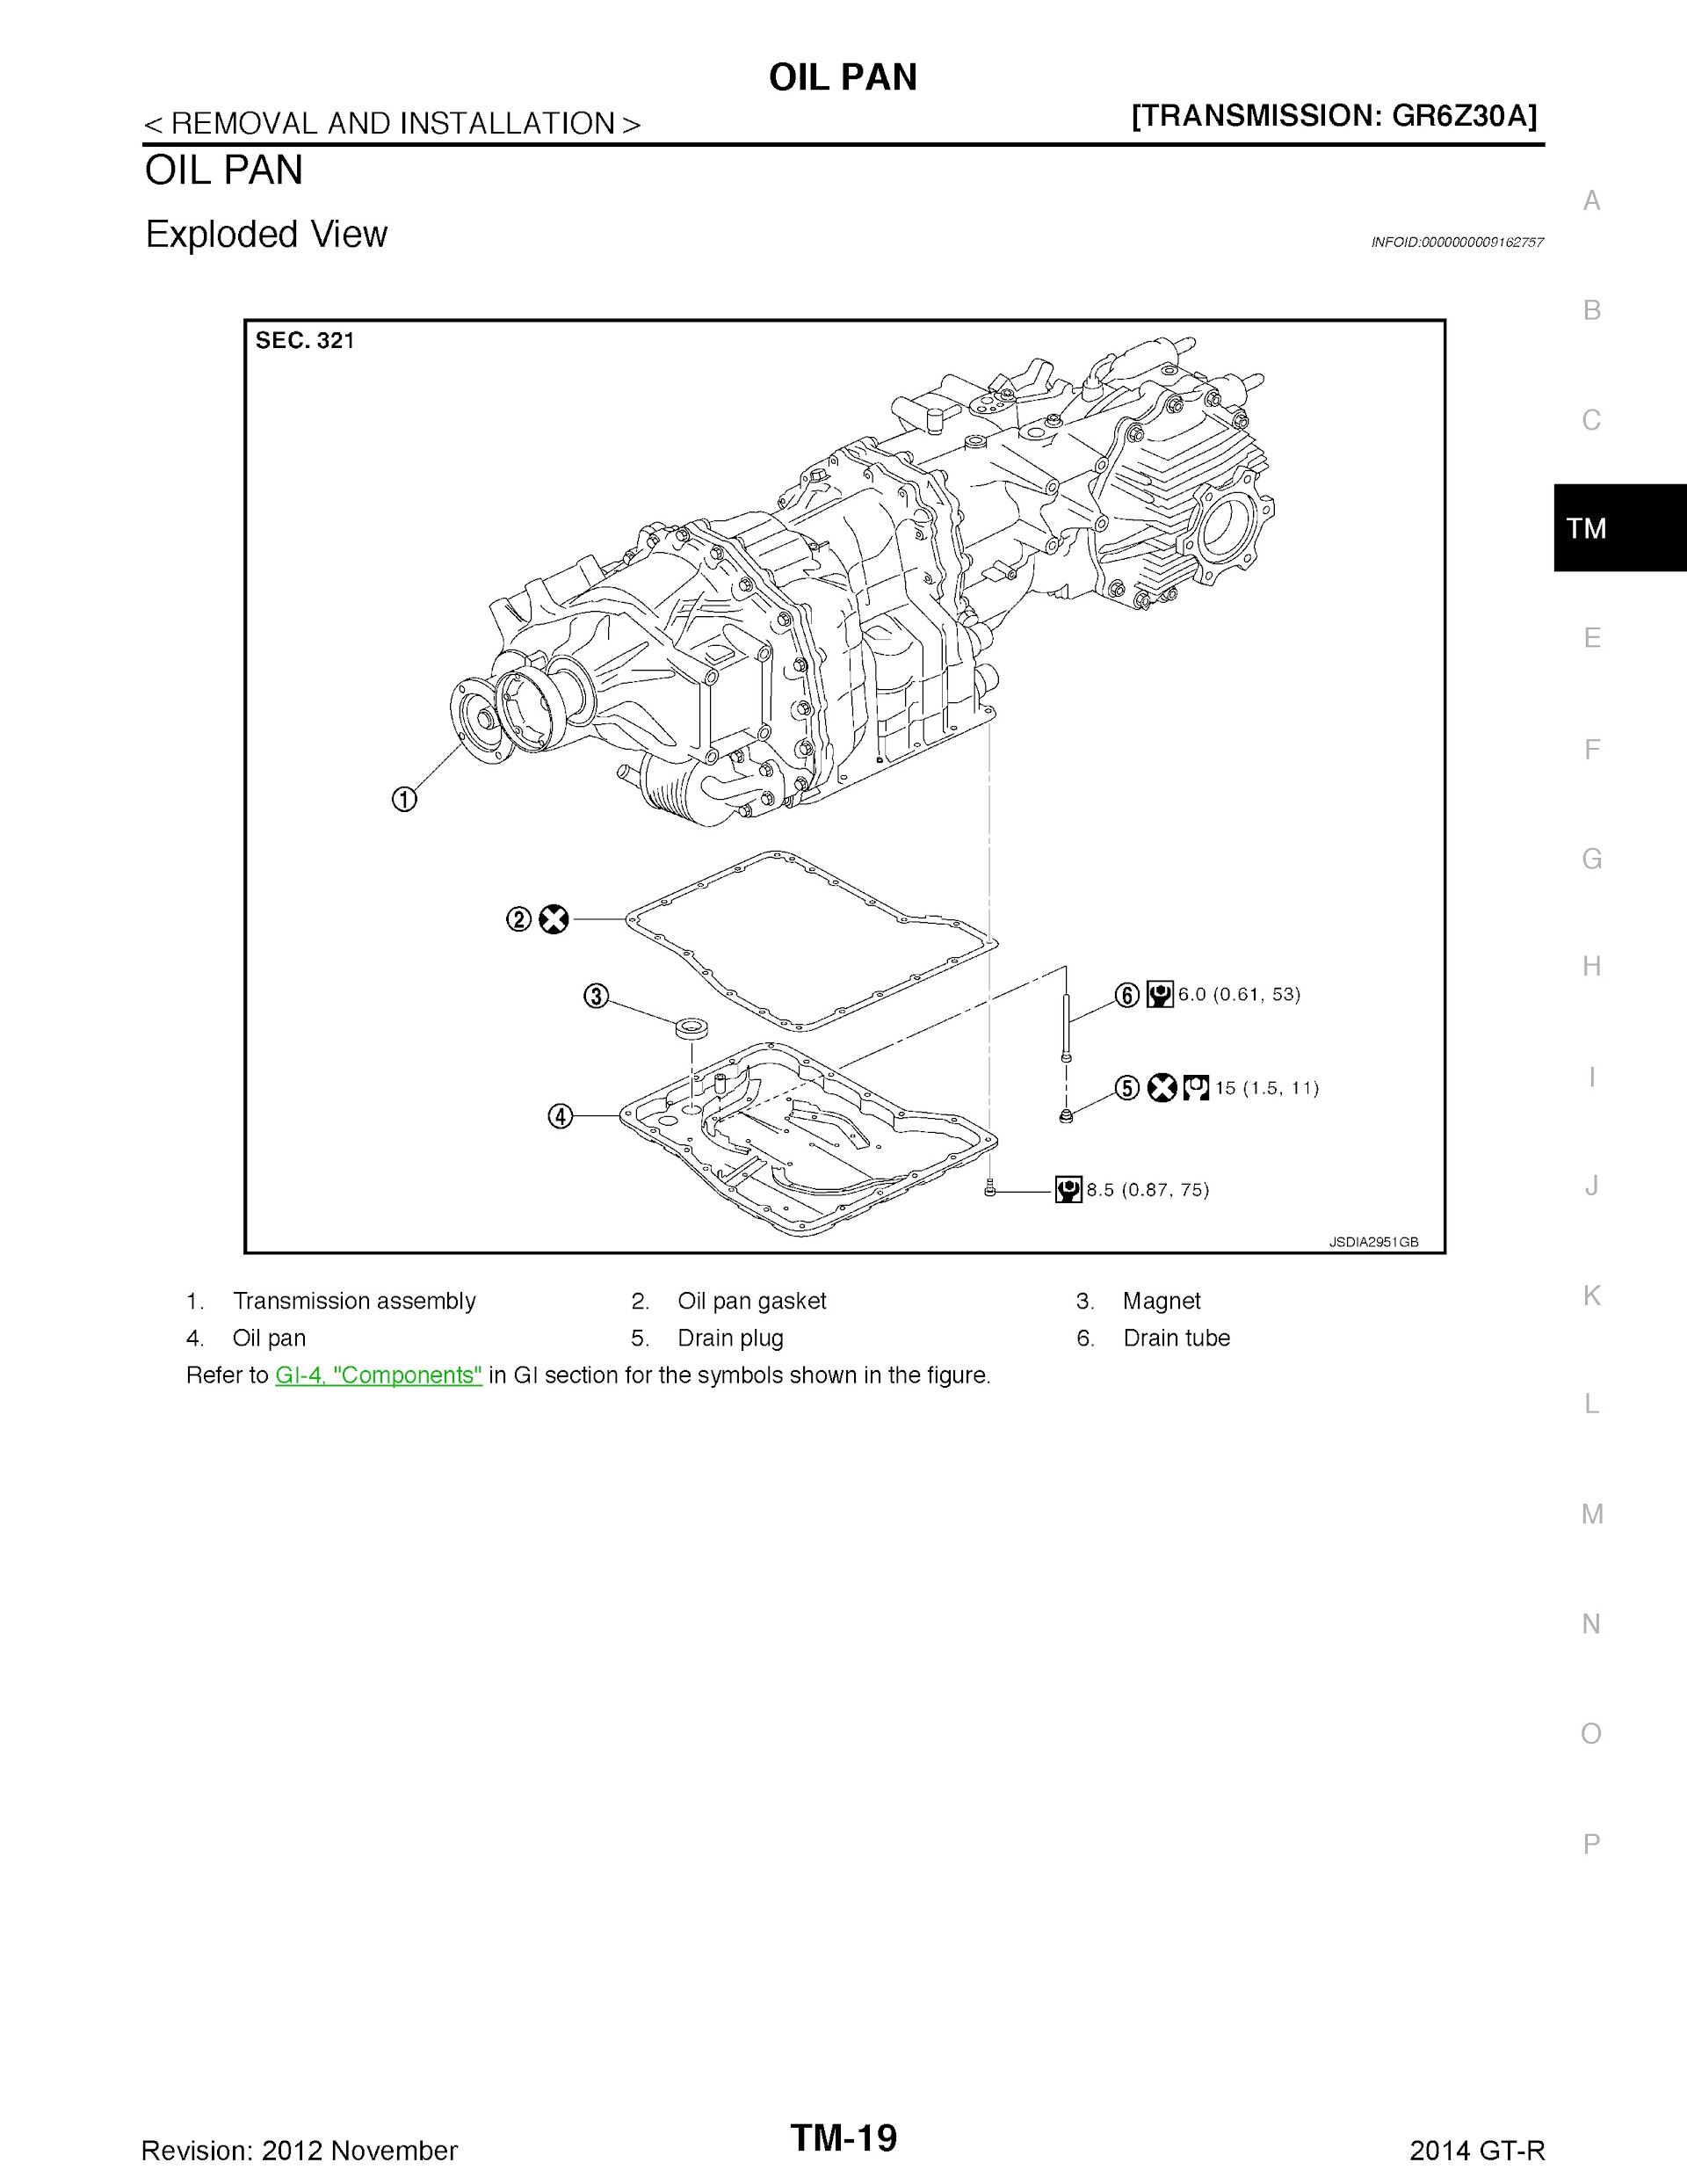 Download 2010-2014 Nissan GTR Repair Manual.